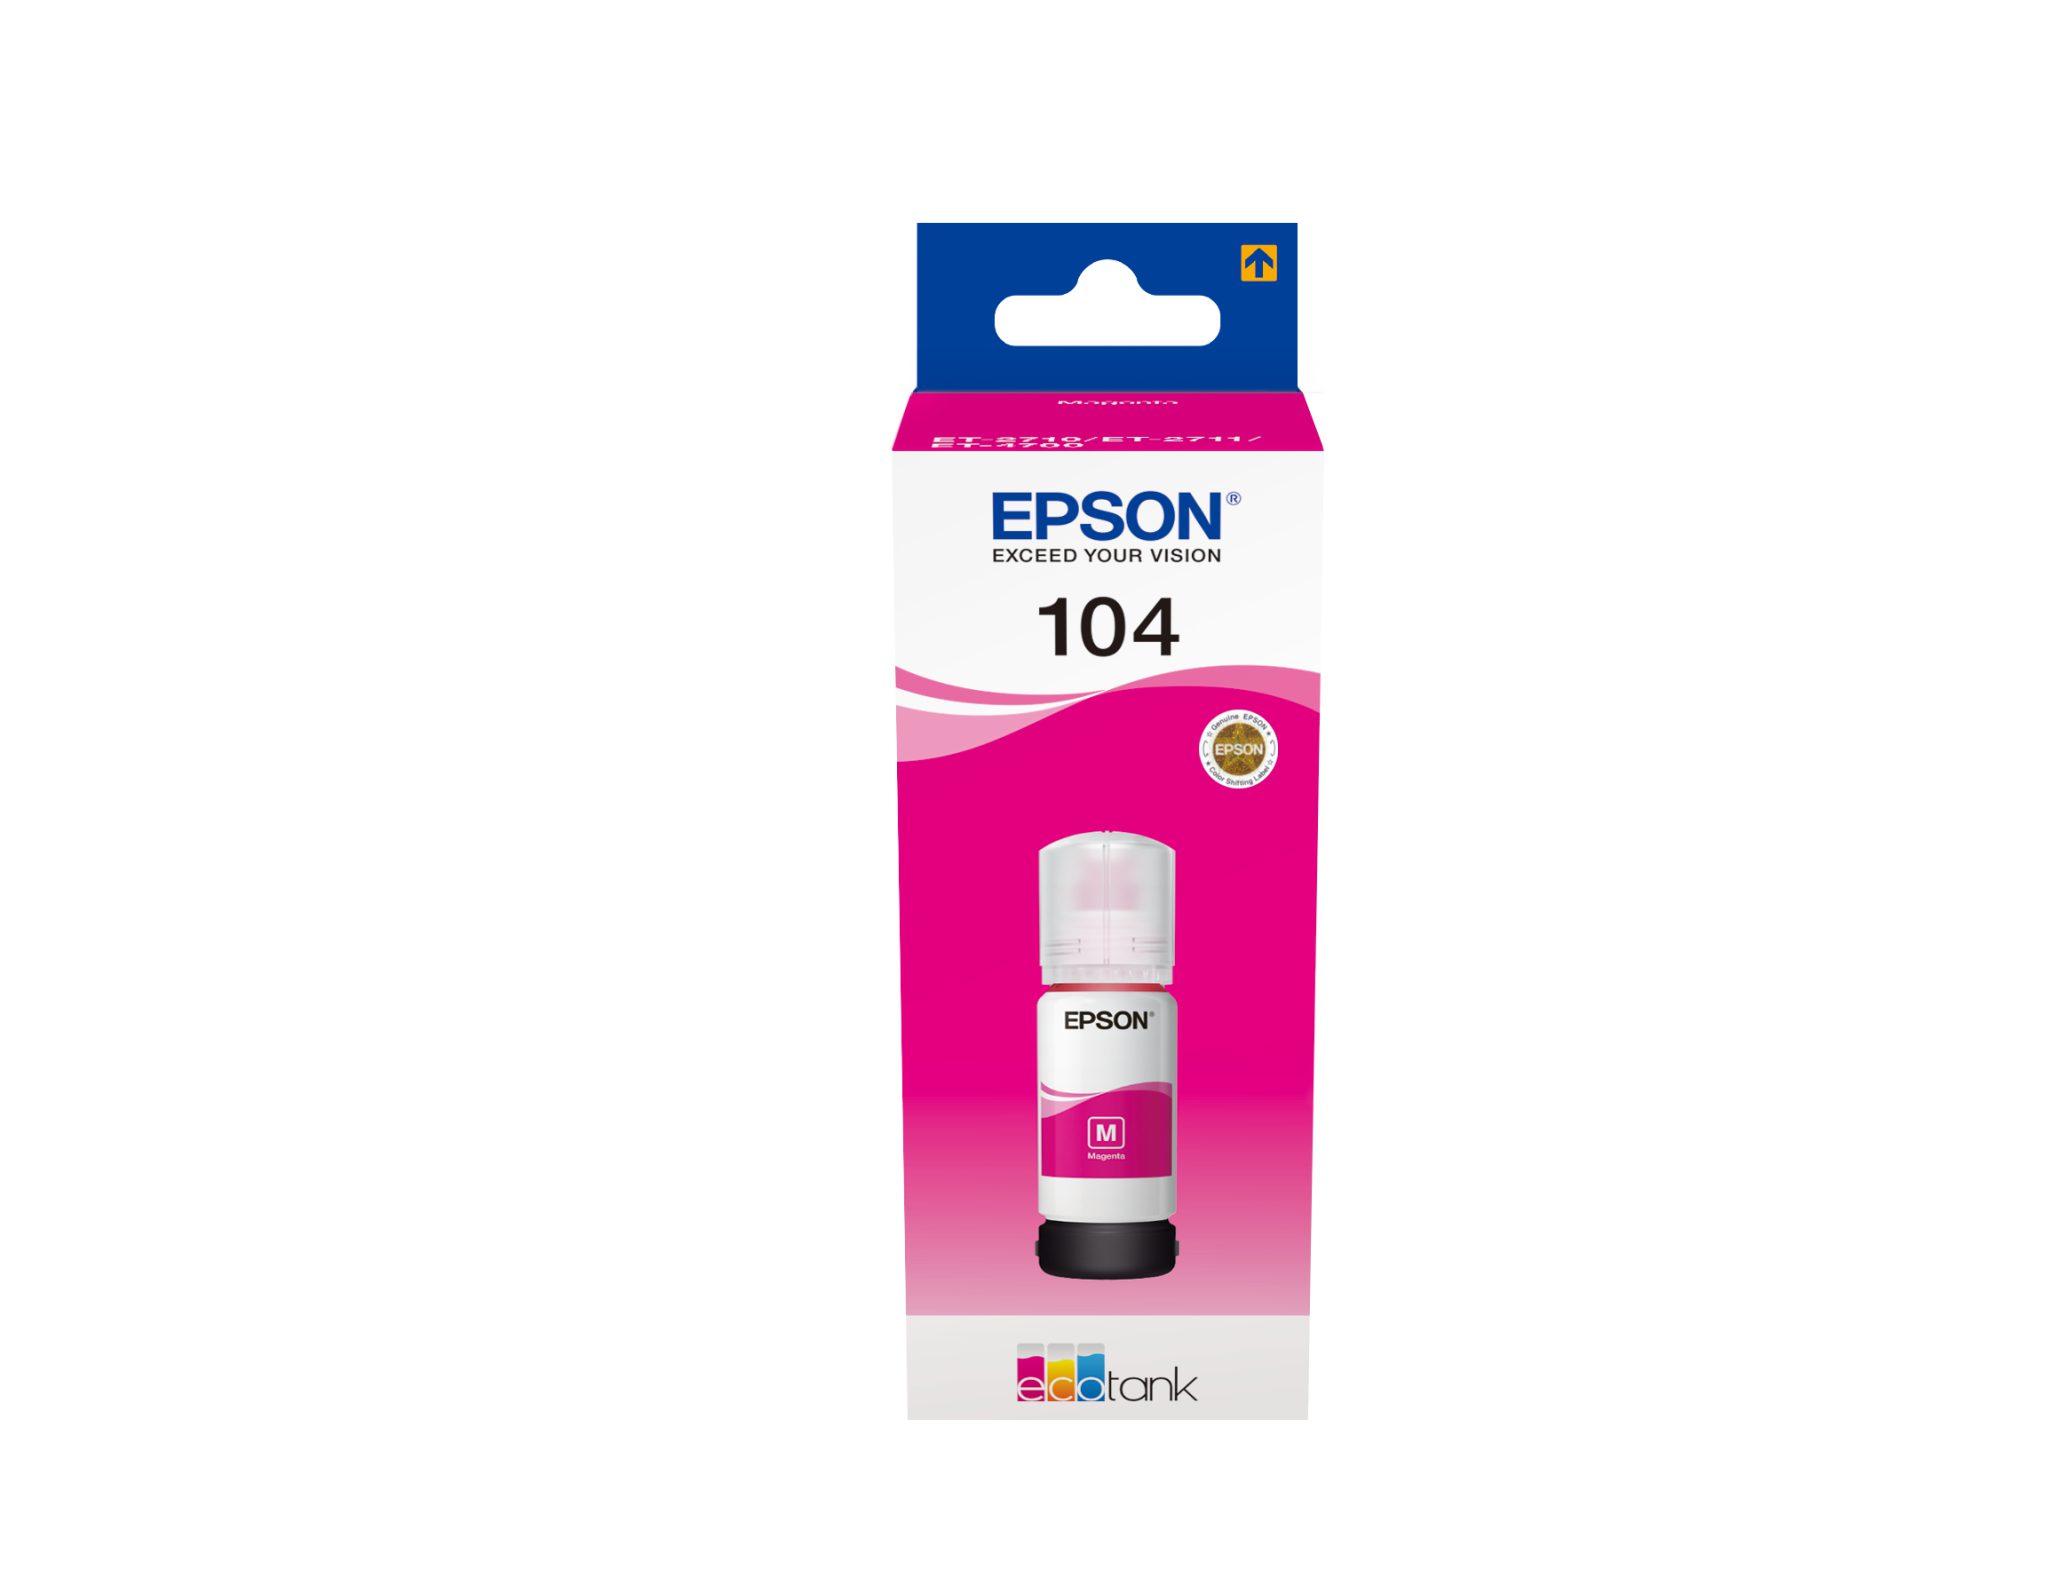 EPSON Inkttank 104 Magenta 65ml 1st